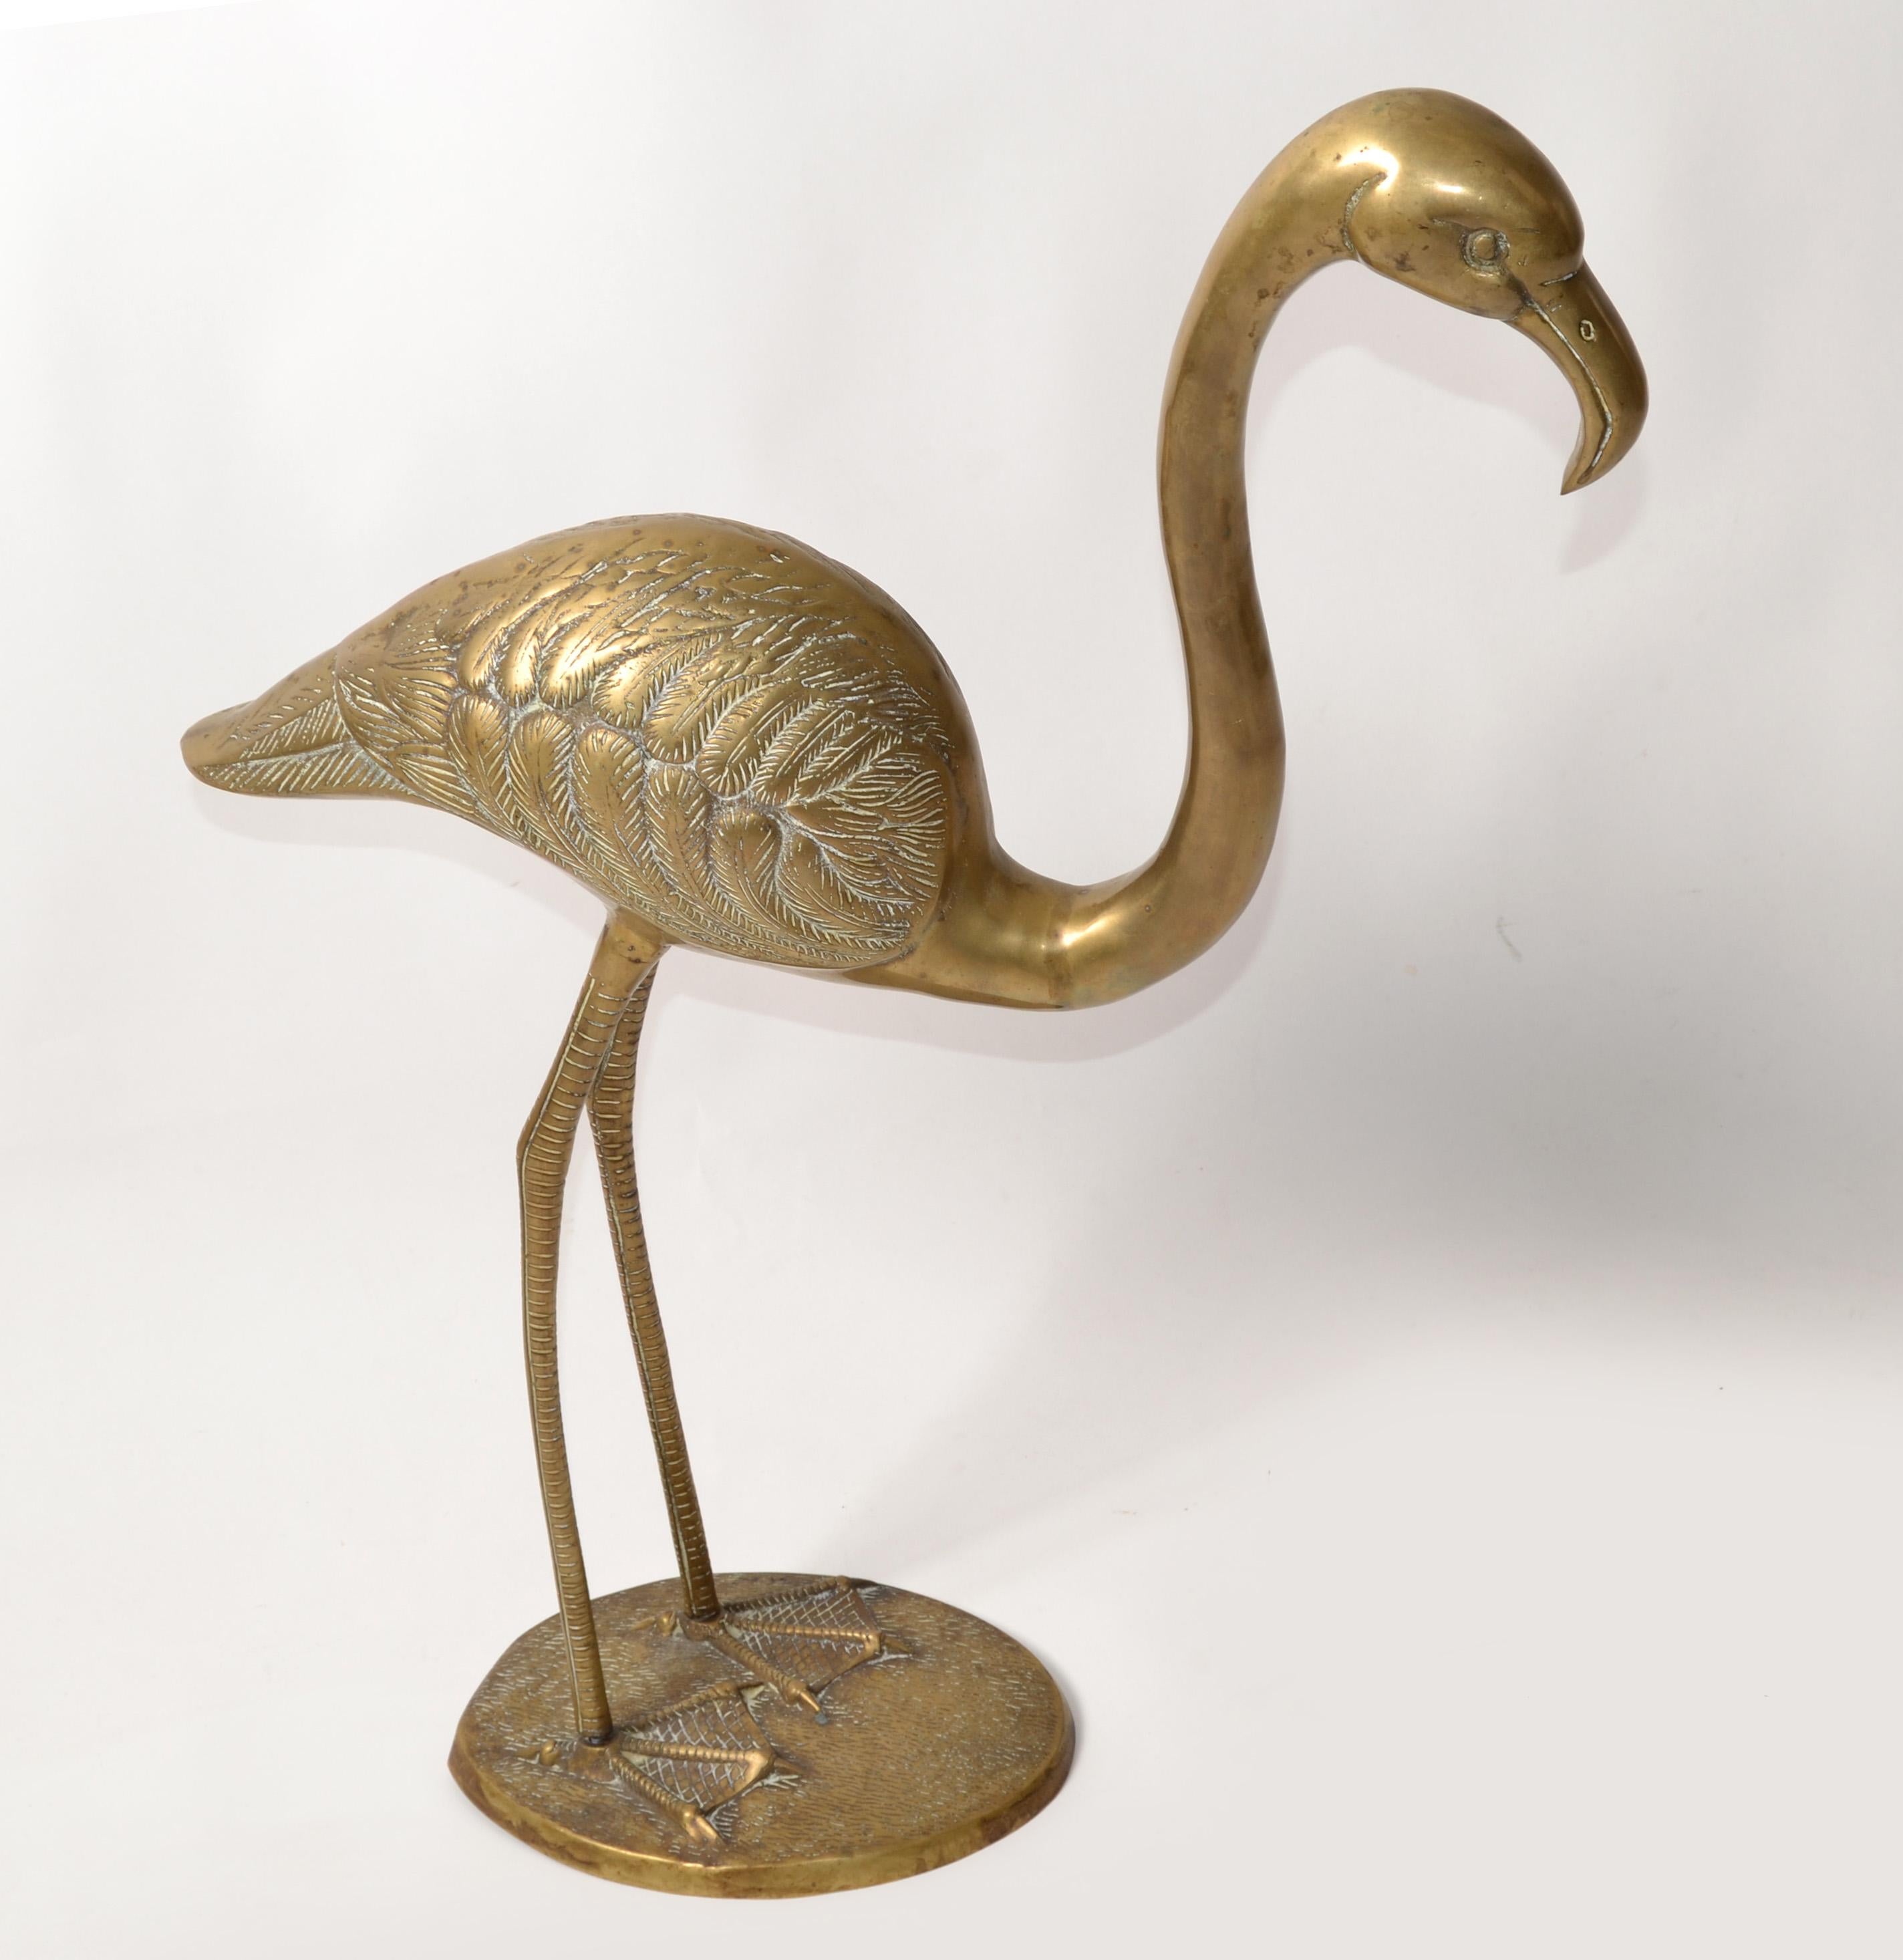 Grande sculpture animalière en laiton, sculptée à la main, de style Modern Flamingo, avec jambes et pieds stylisés. 
Les longues pattes et le corps du flamant rose sont fixés à la base à l'aide de petites vis.
Fabriqué aux États-Unis à la fin des